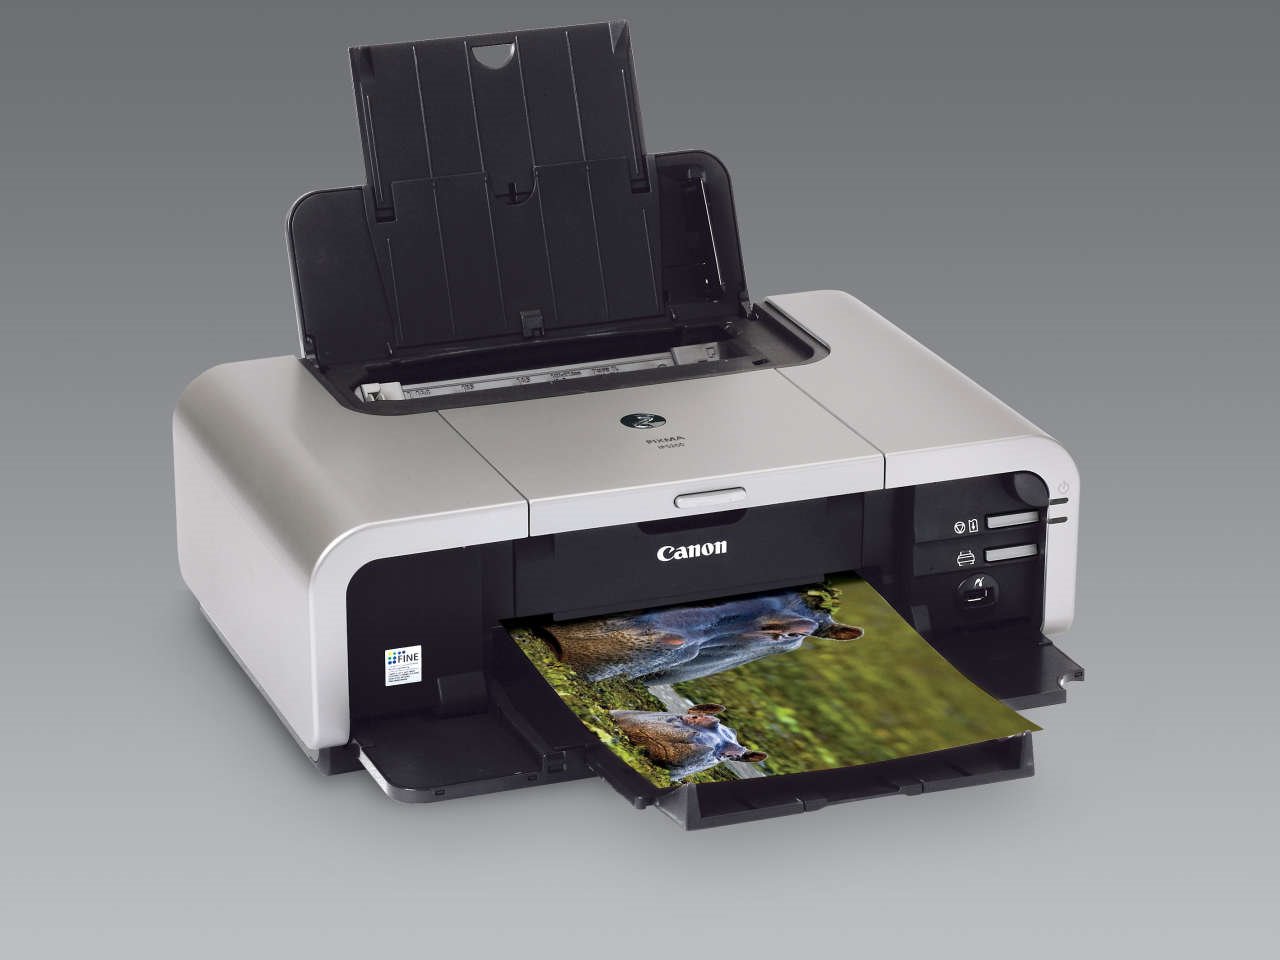 canon mp490 printer driver